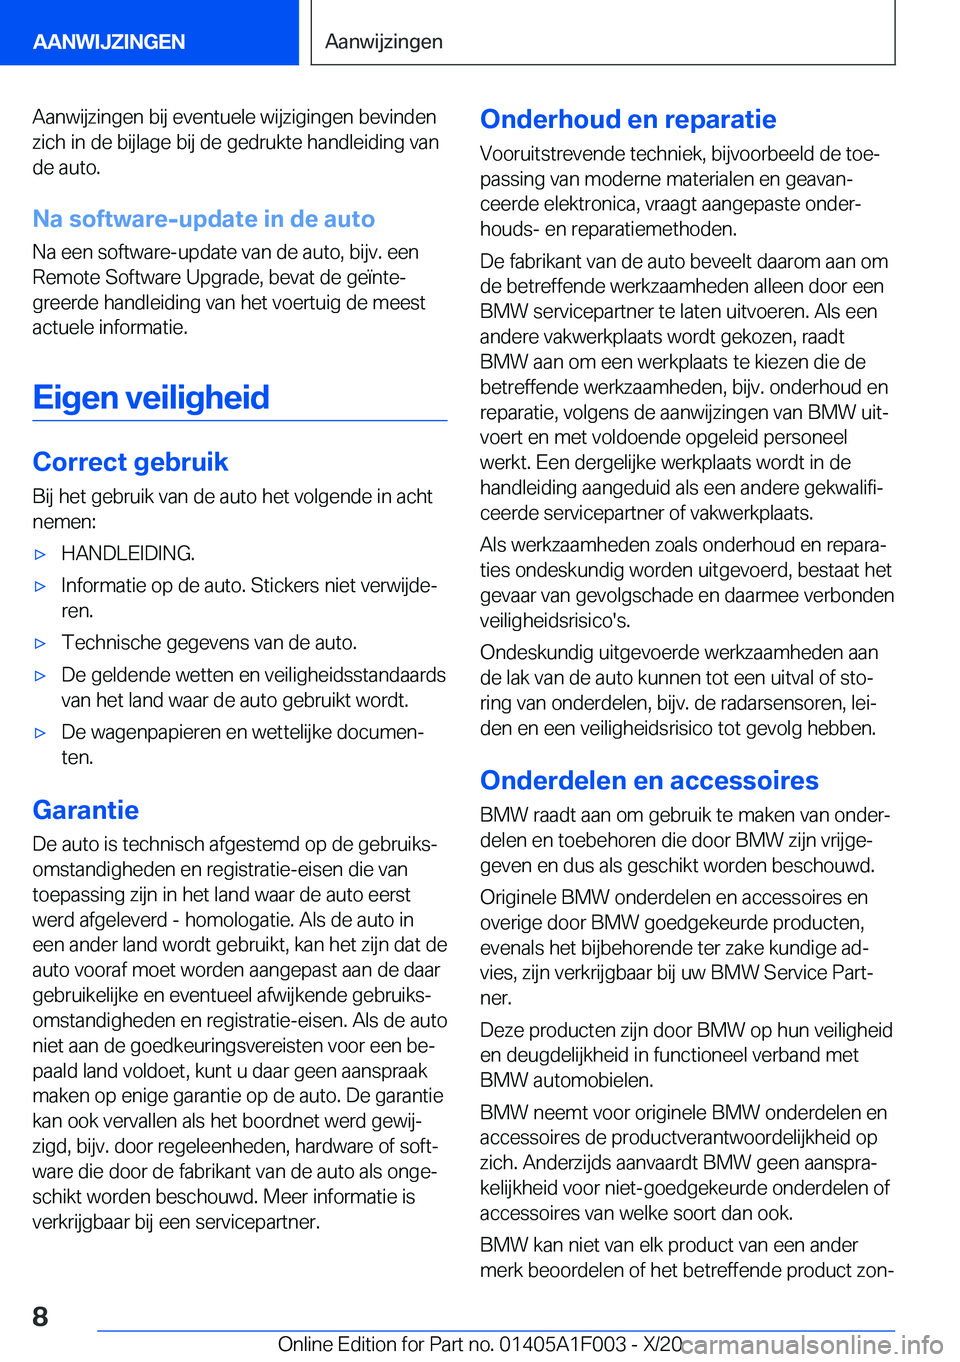 BMW X7 2021  Instructieboekjes (in Dutch) �A�a�n�w�i�j�z�i�n�g�e�n��b�i�j��e�v�e�n�t�u�e�l�e��w�i�j�z�i�g�i�n�g�e�n��b�e�v�i�n�d�e�n�z�i�c�h��i�n��d�e��b�i�j�l�a�g�e��b�i�j��d�e��g�e�d�r�u�k�t�e��h�a�n�d�l�e�i�d�i�n�g��v�a�n
�d�e�